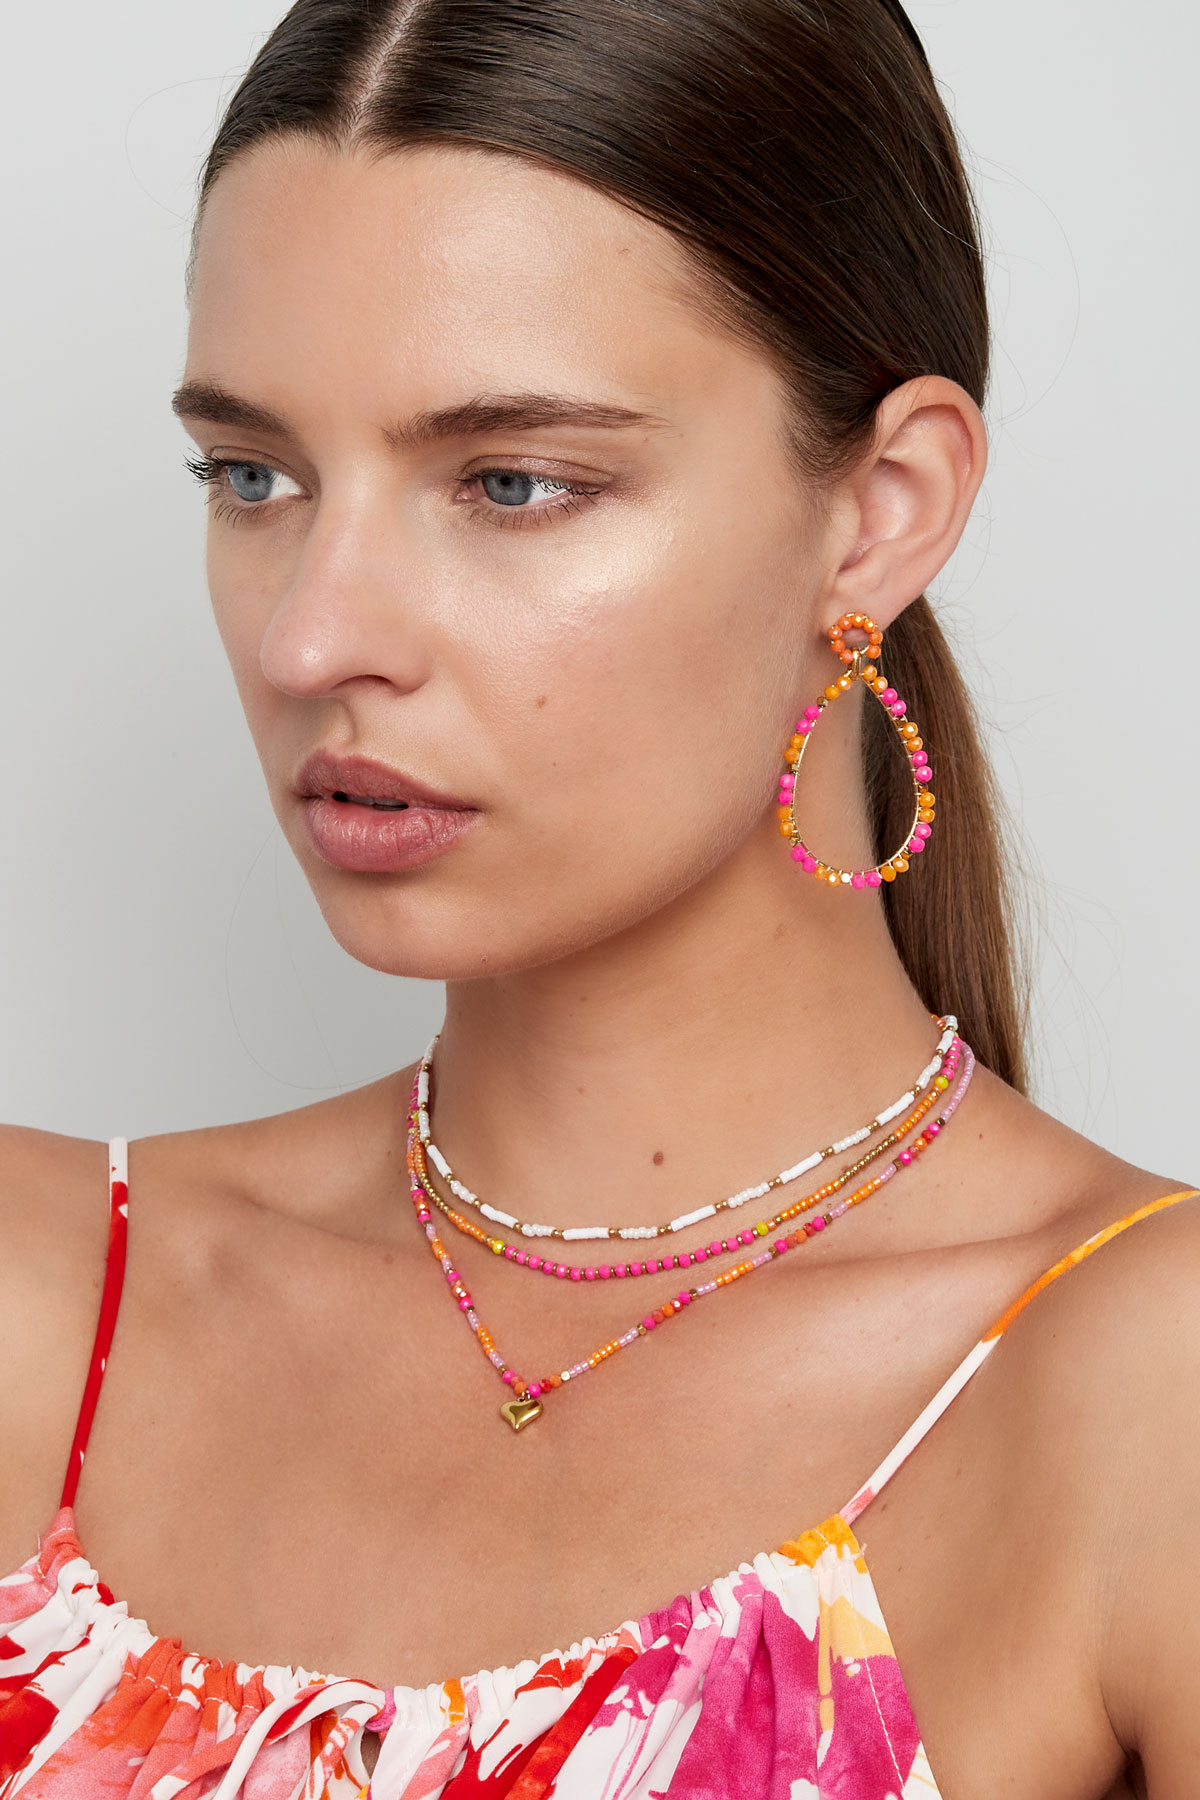 Collier petites perles colorées - rose/orange h5 Image4